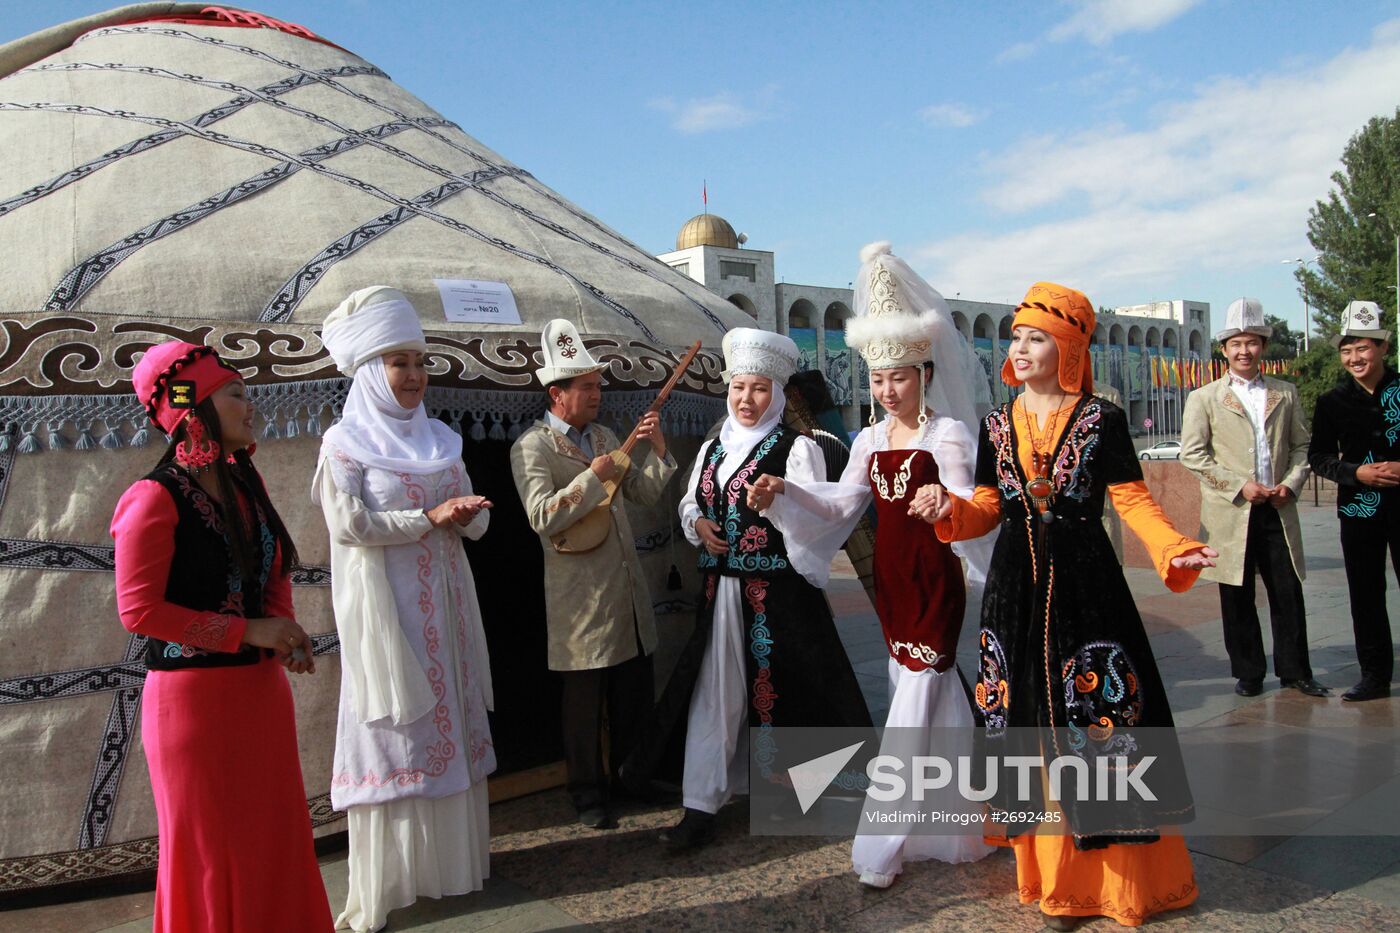 World People's Epics Festival in Bishkek